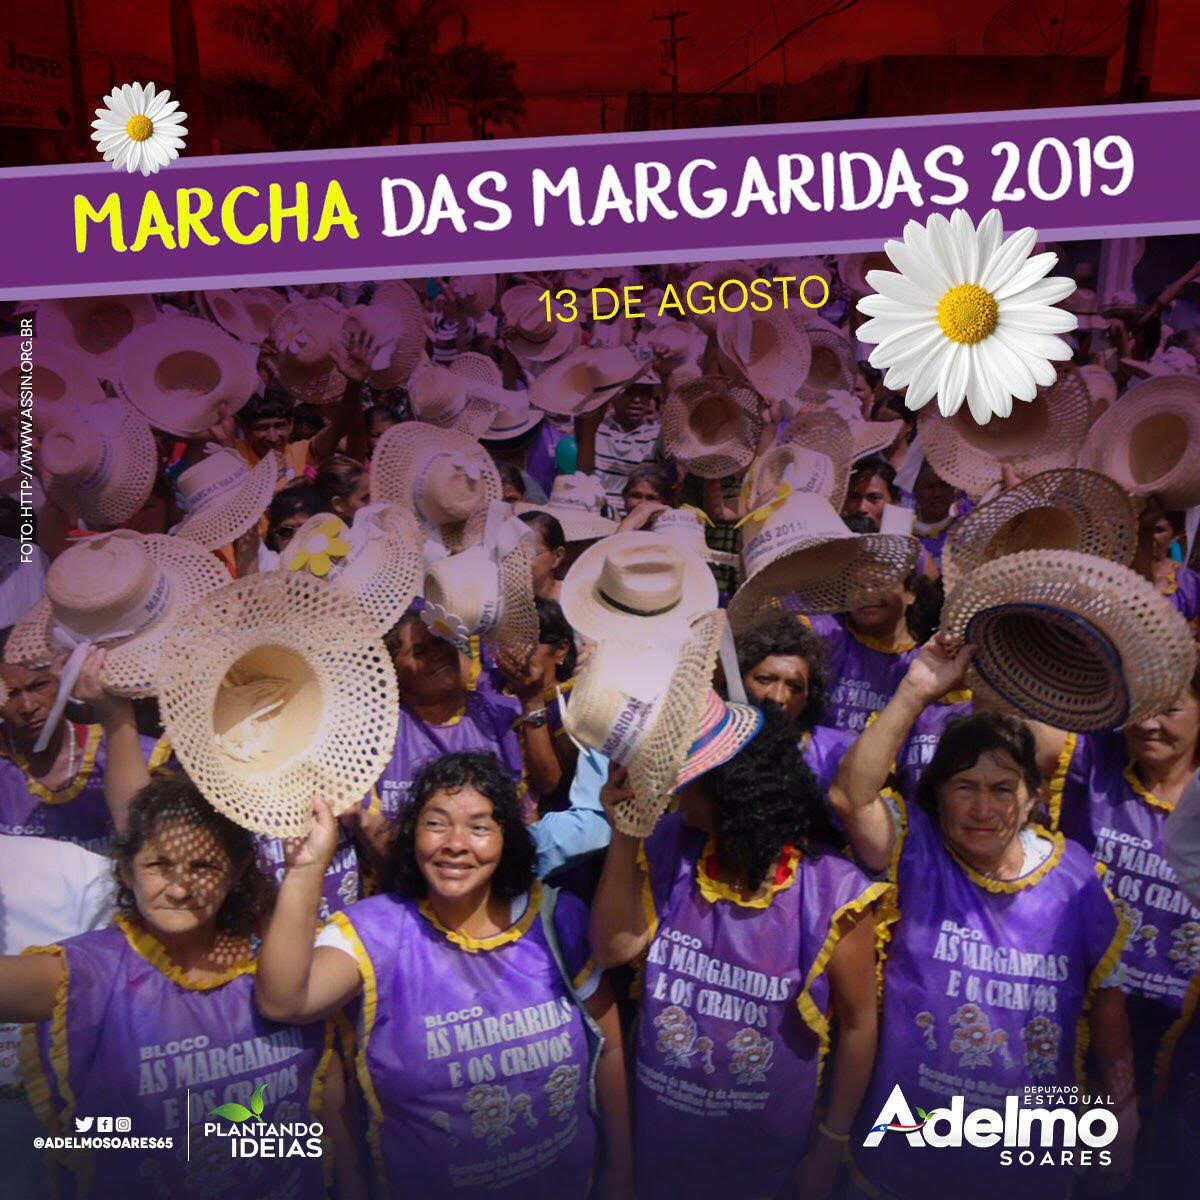 Deputado Adelmo Soares apoia a 6° Marcha das Margaridas, em Brasília 